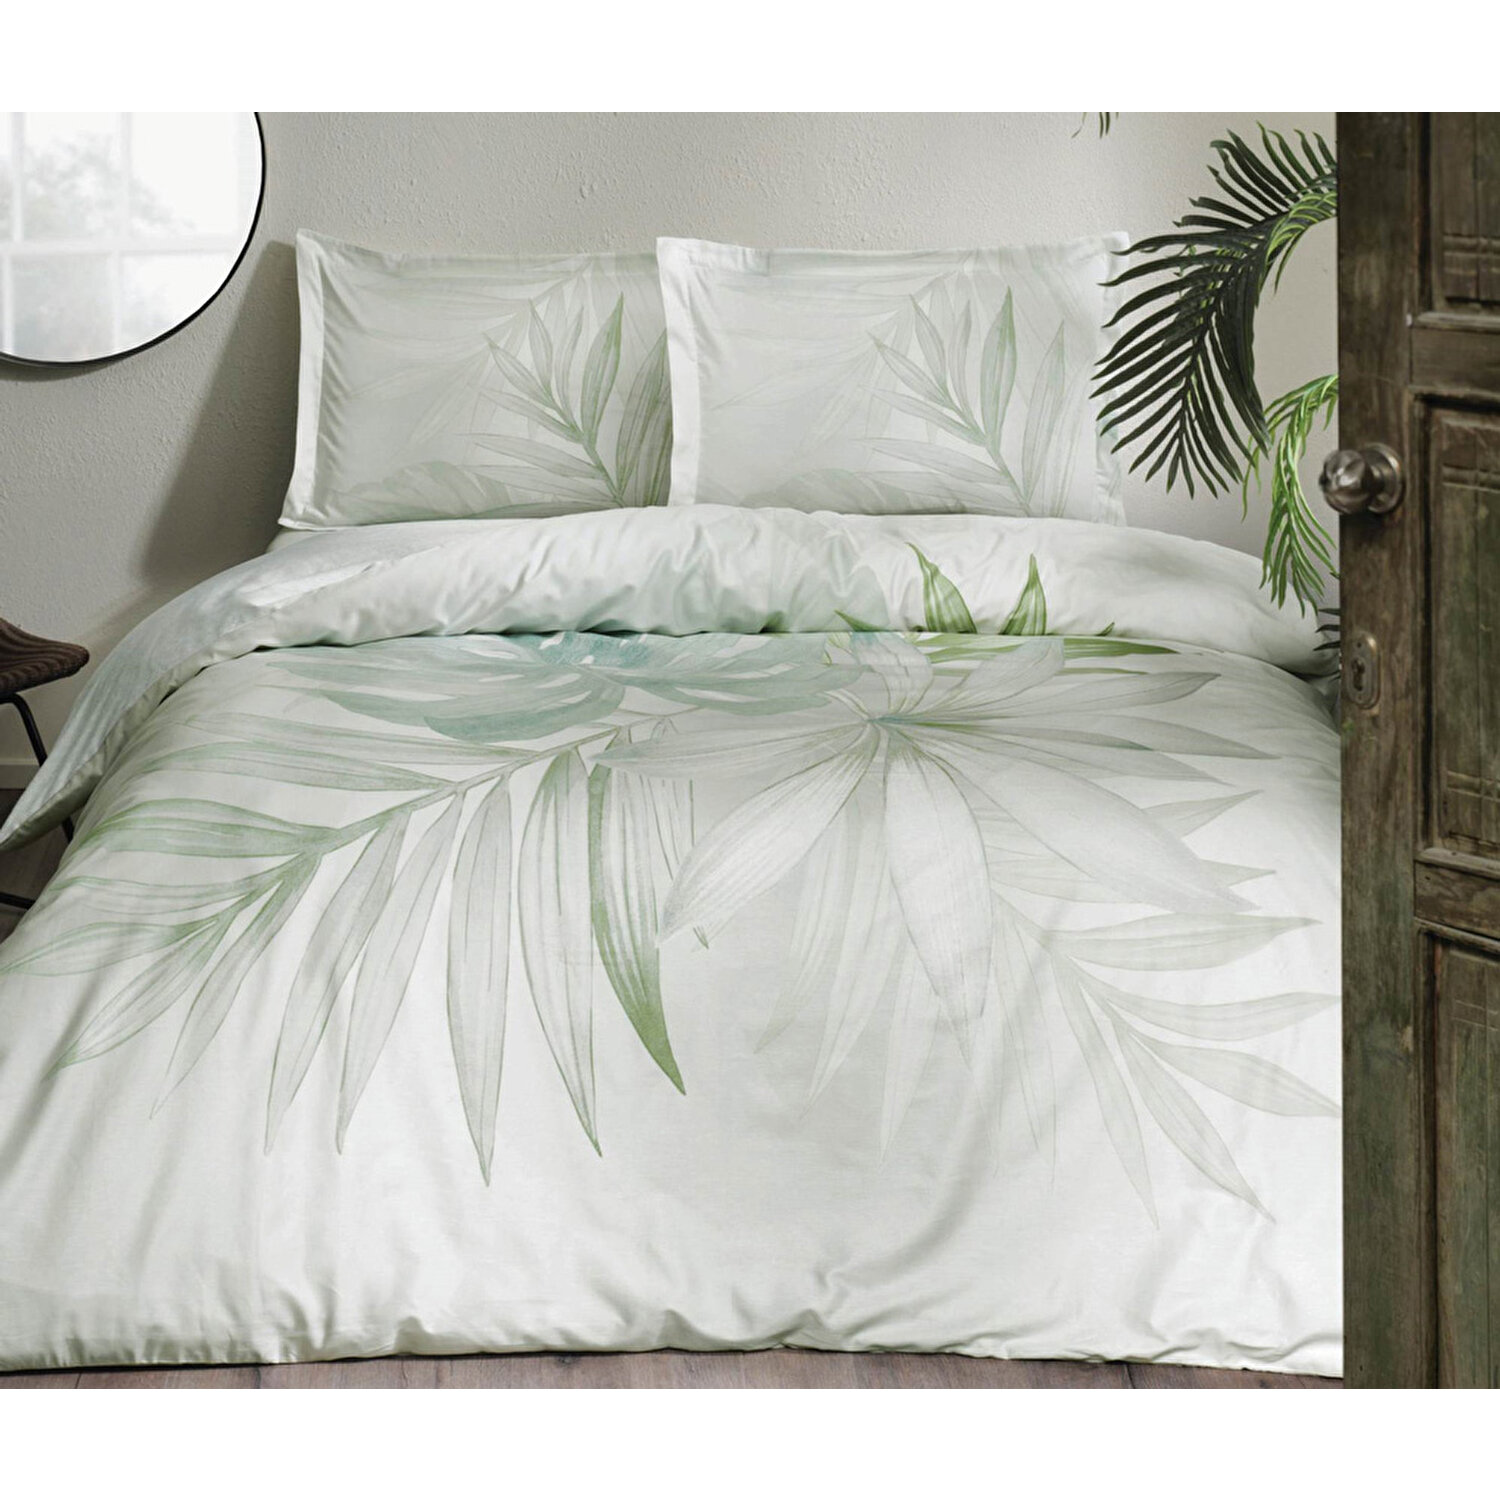 Комплект постельного белья Tac из хлопка и атласа Orlando Green, двойной